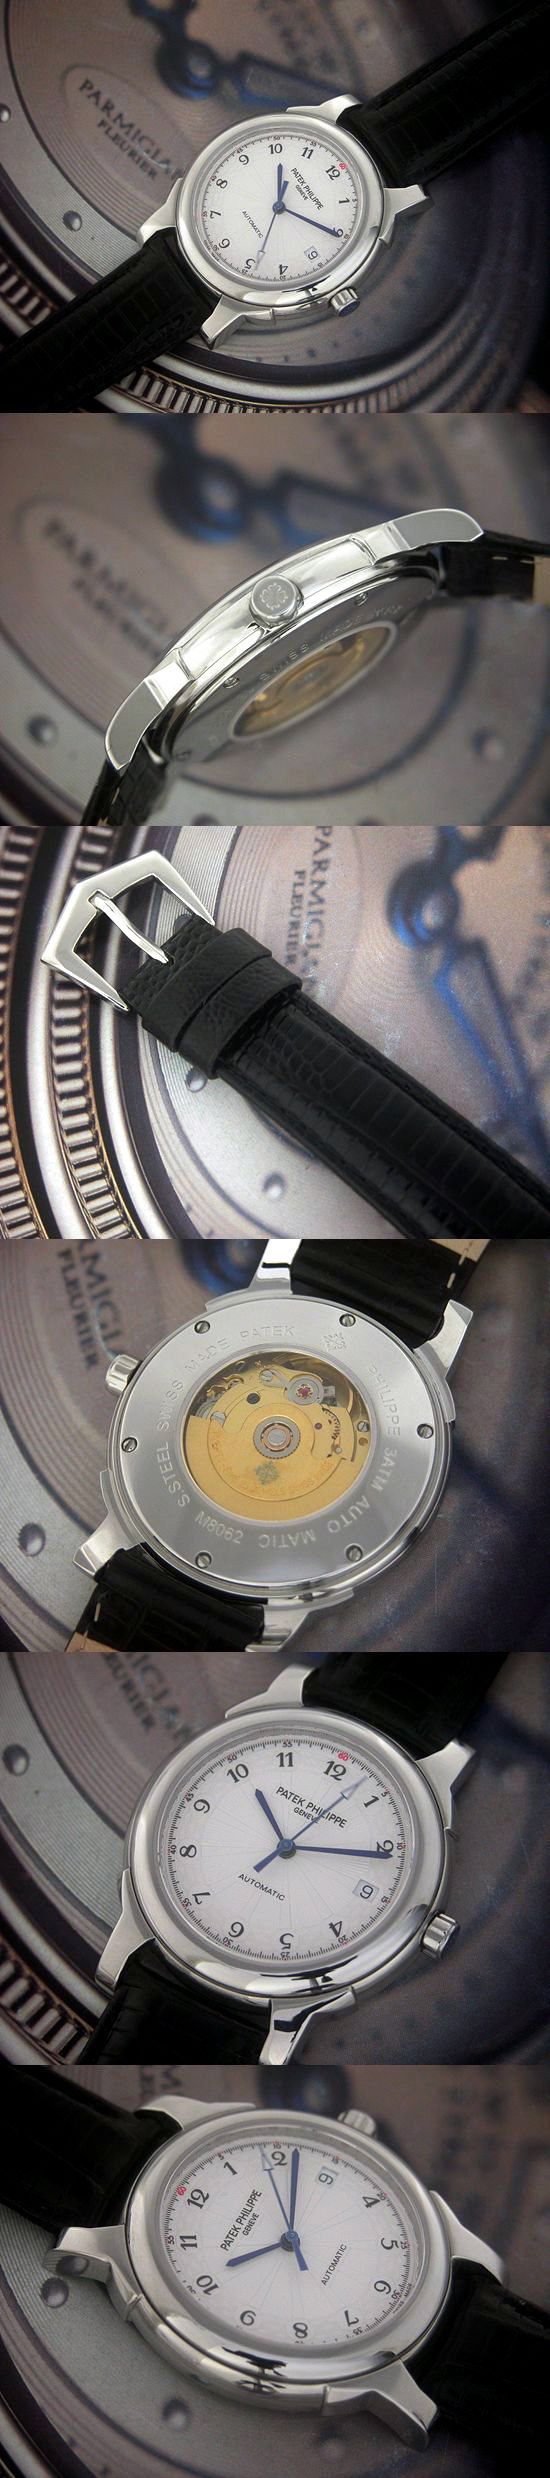 おしゃれなブランド時計がパテック フィリップ-カラトラバ-PATEK PHILIPPE-PP00003A-男性用を提供します.